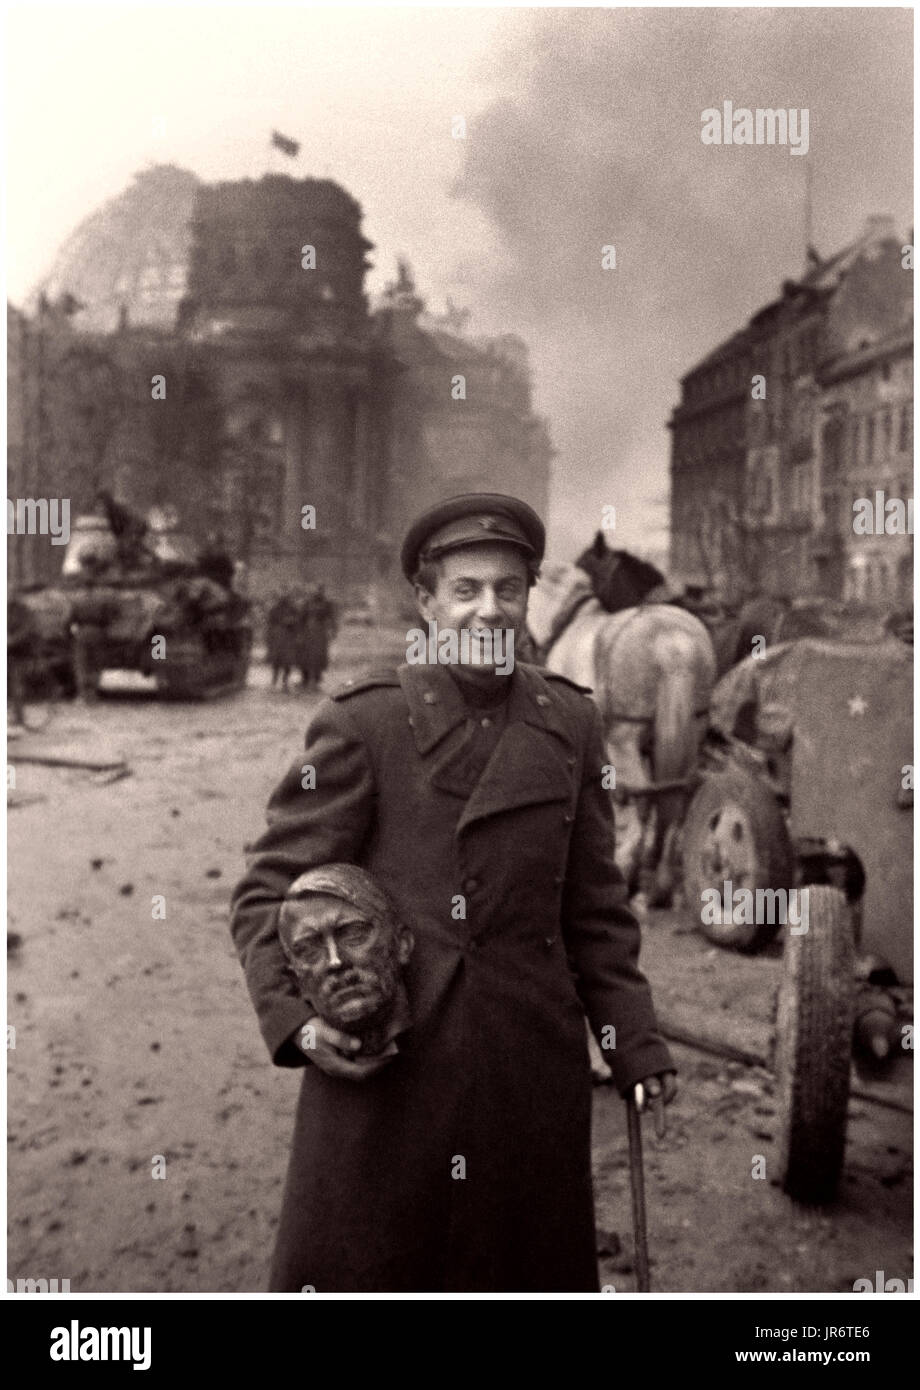 REICHSKANZLERIN REICHSTAG WW2 NAZI-NIEDERLAGE RUSSISCHER SOLDAT HITLER BUST BERLIN 1945 russische BESETZUNG ein glücklicher sowjetischer russischer Soldat, der eine Büste des „Führers“ Adolf Hitler trug, holte sich im Hintergrund aus den Ruinen des deutschen Reichskanzlergebäudes im Berliner Reich zurück, das auf die überwältigende sowjetische Militärstreitkraft fiel, Mai 2. 1945 Stockfoto